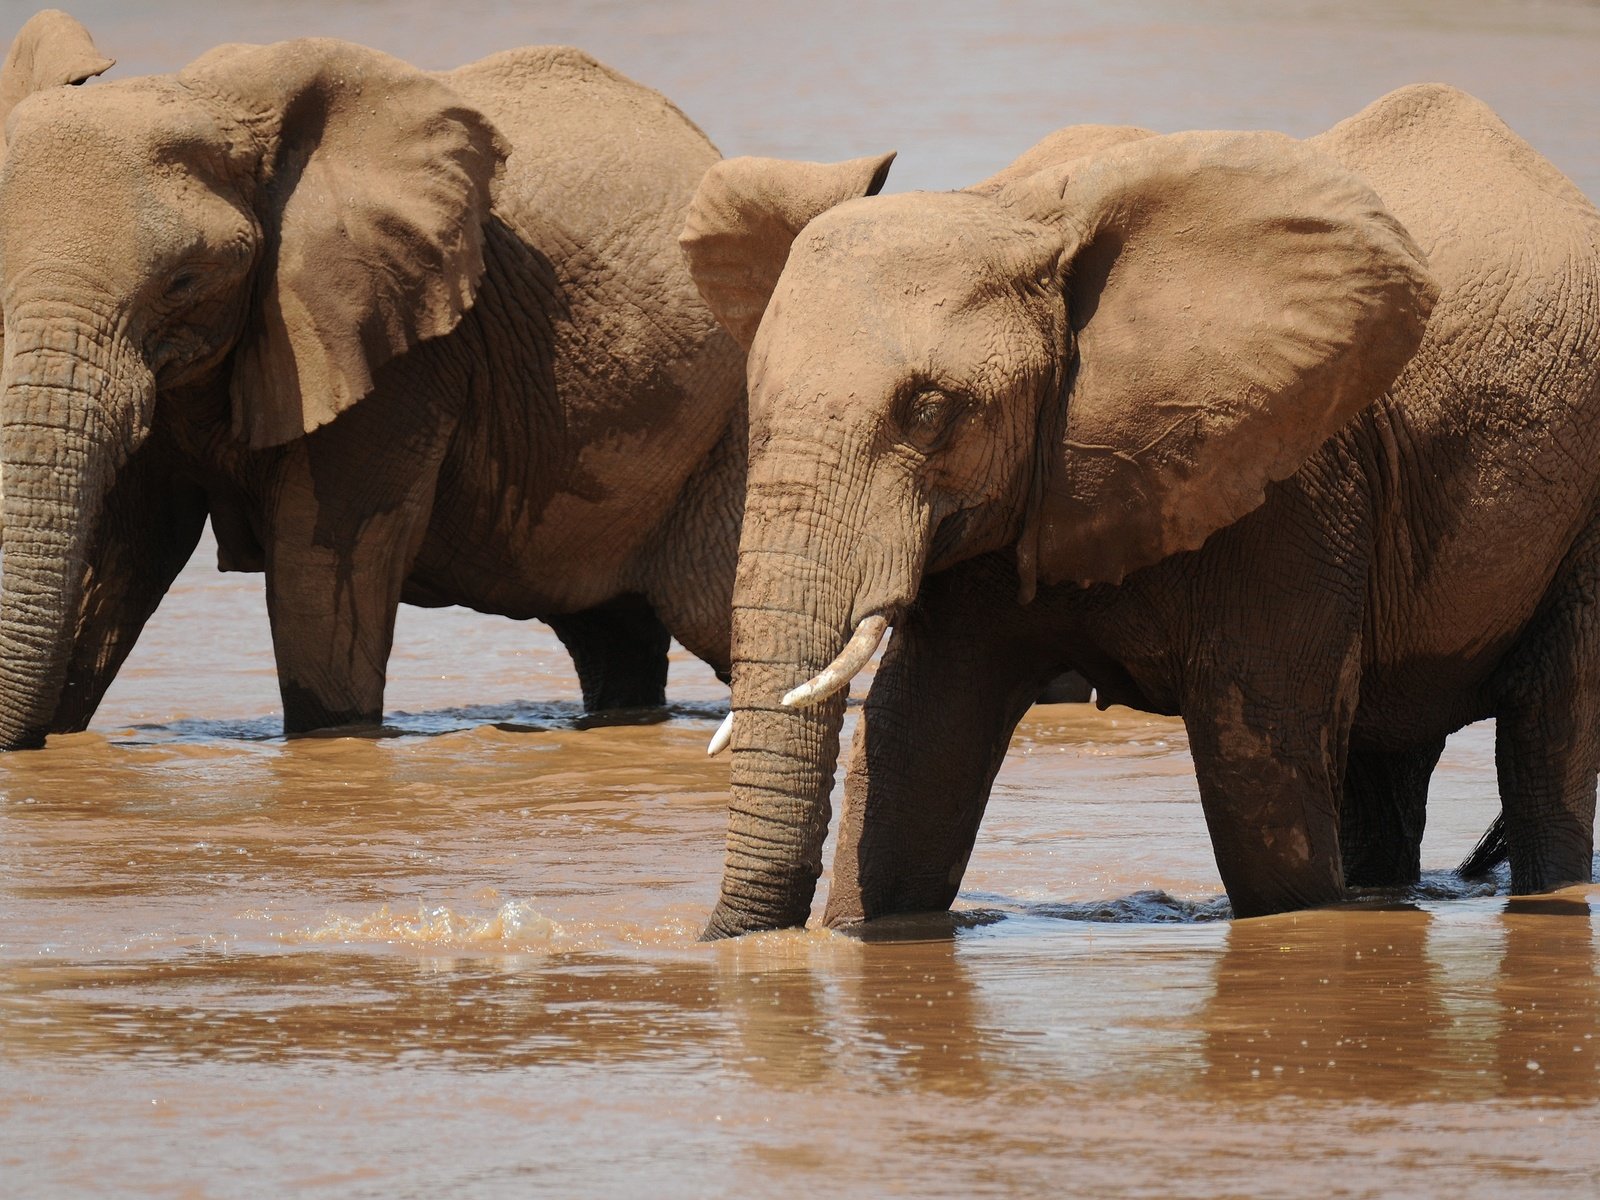 Показано, как слоны пользуются своим хоботом